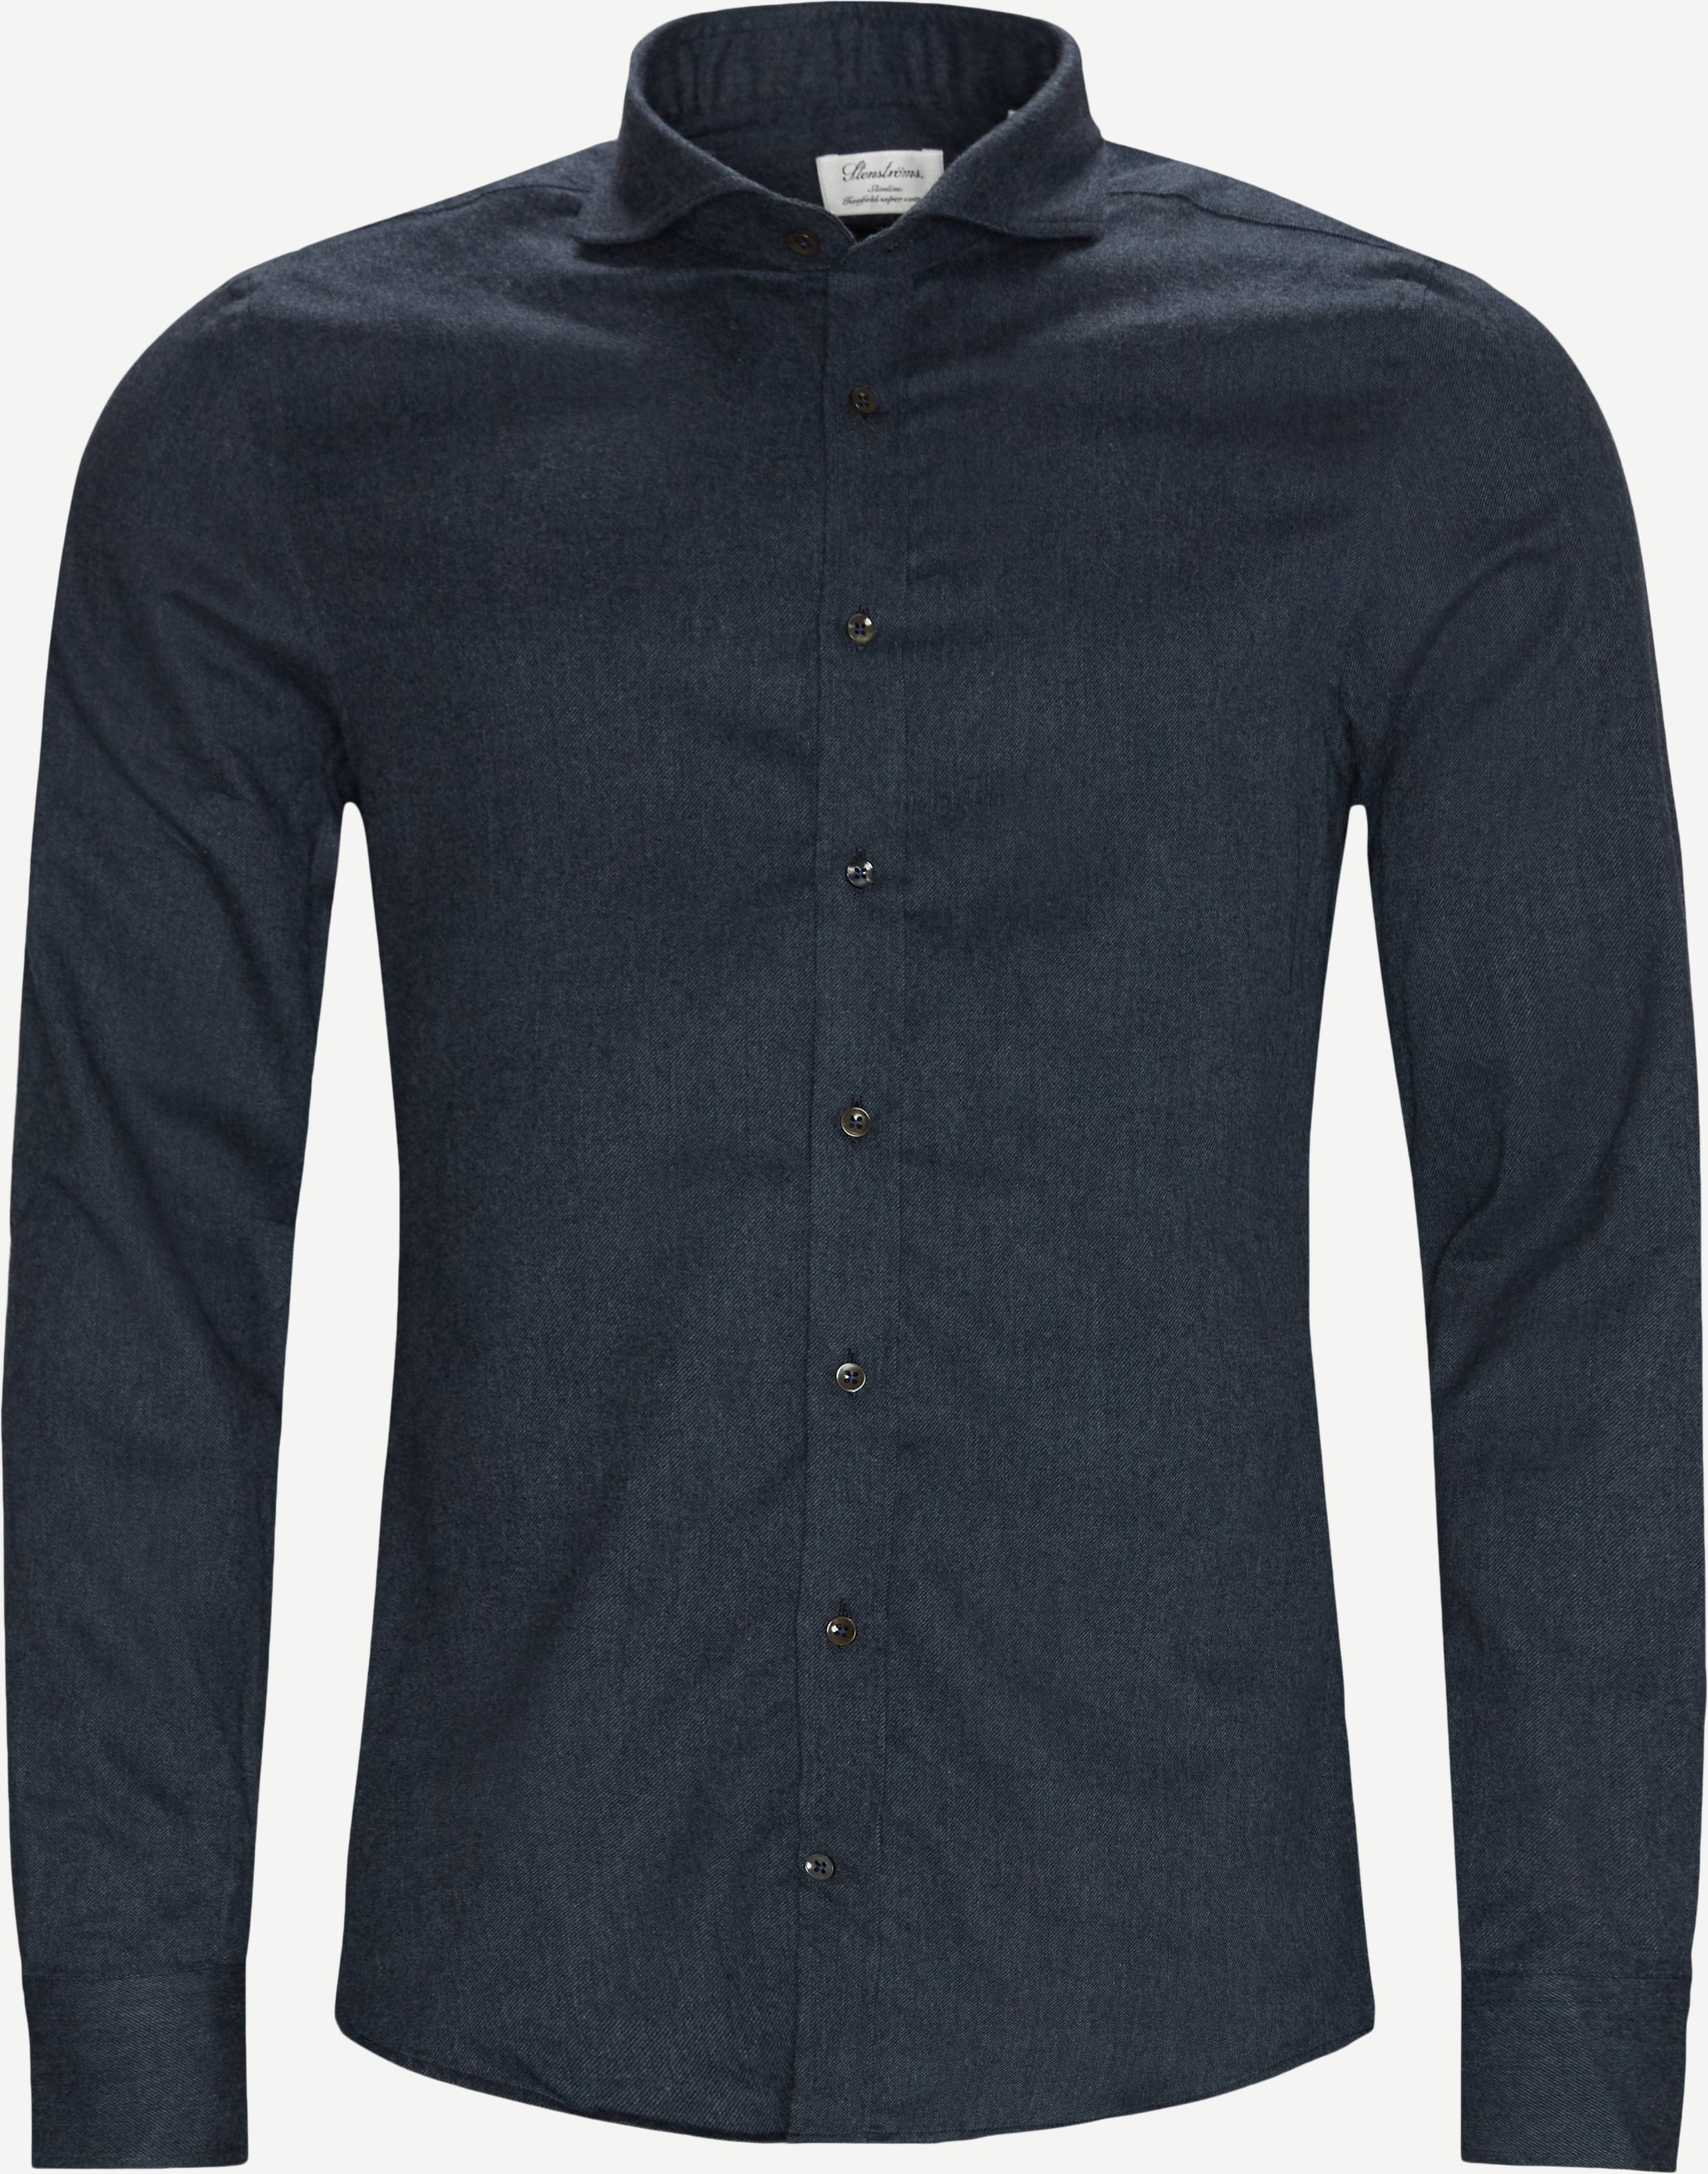 7635 Tvåfaldig Super Cotton Shirt - Skjortor - Blå